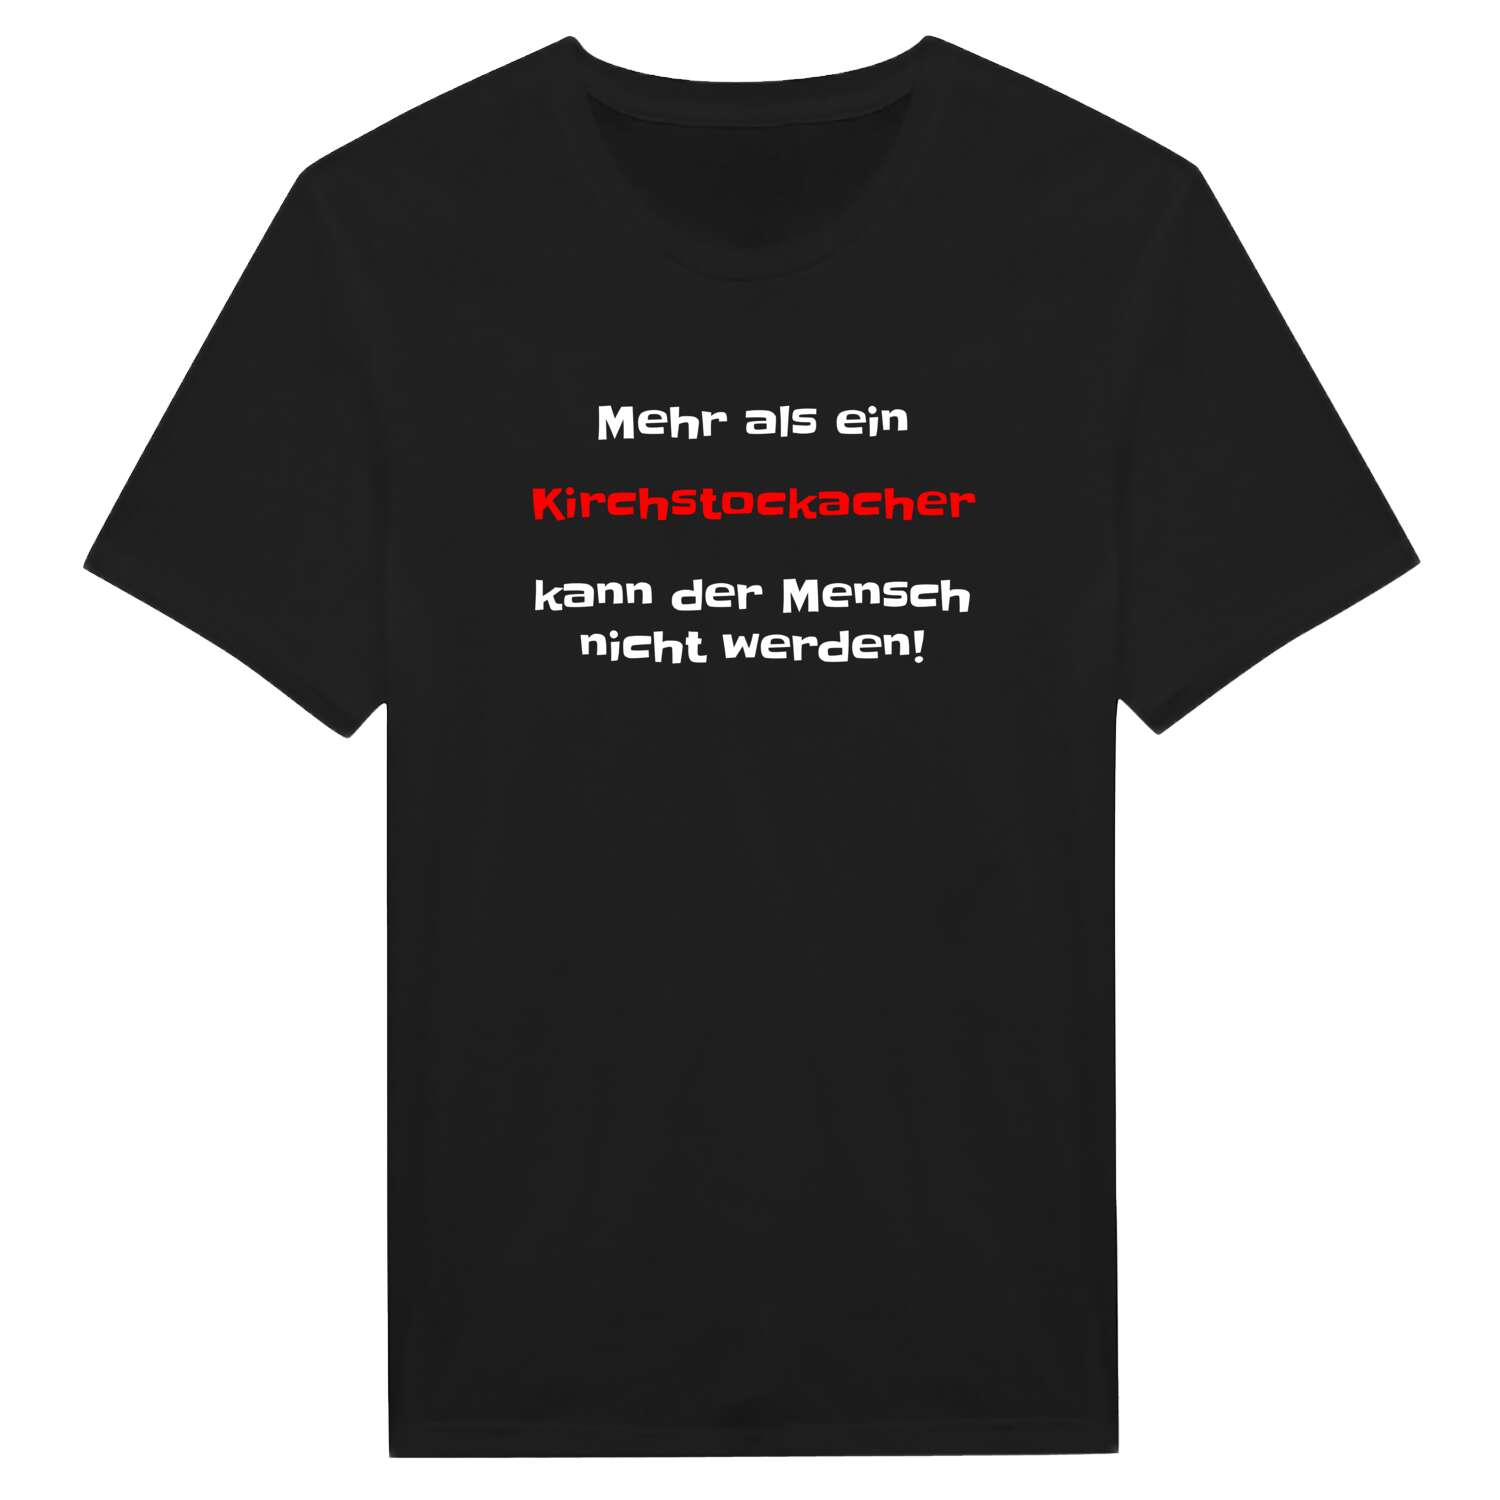 Kirchstockach T-Shirt »Mehr als ein«